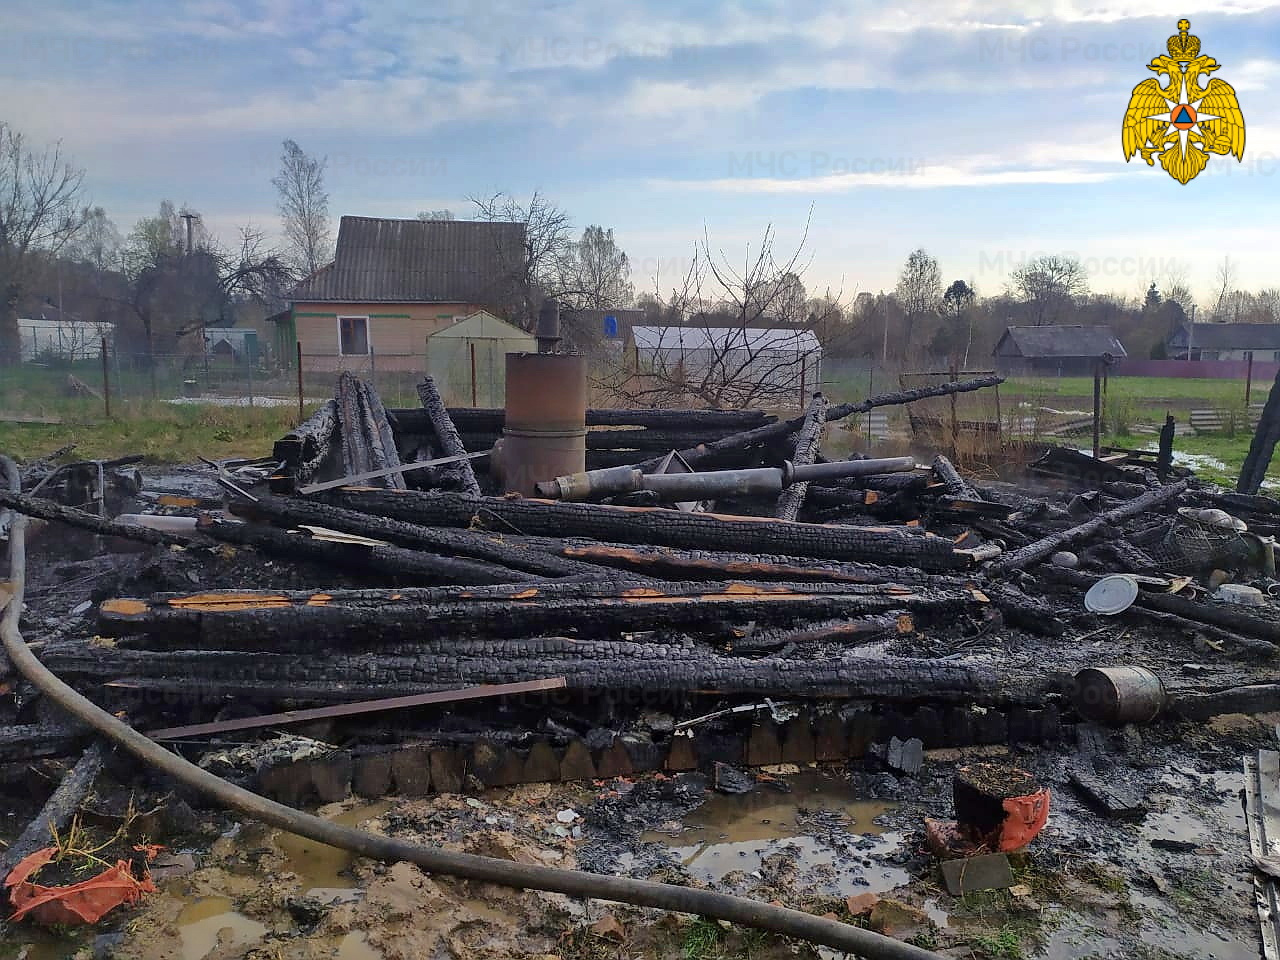 В Ярцевском районе хозяин горящей бани в панике забыл вызвать пожарных